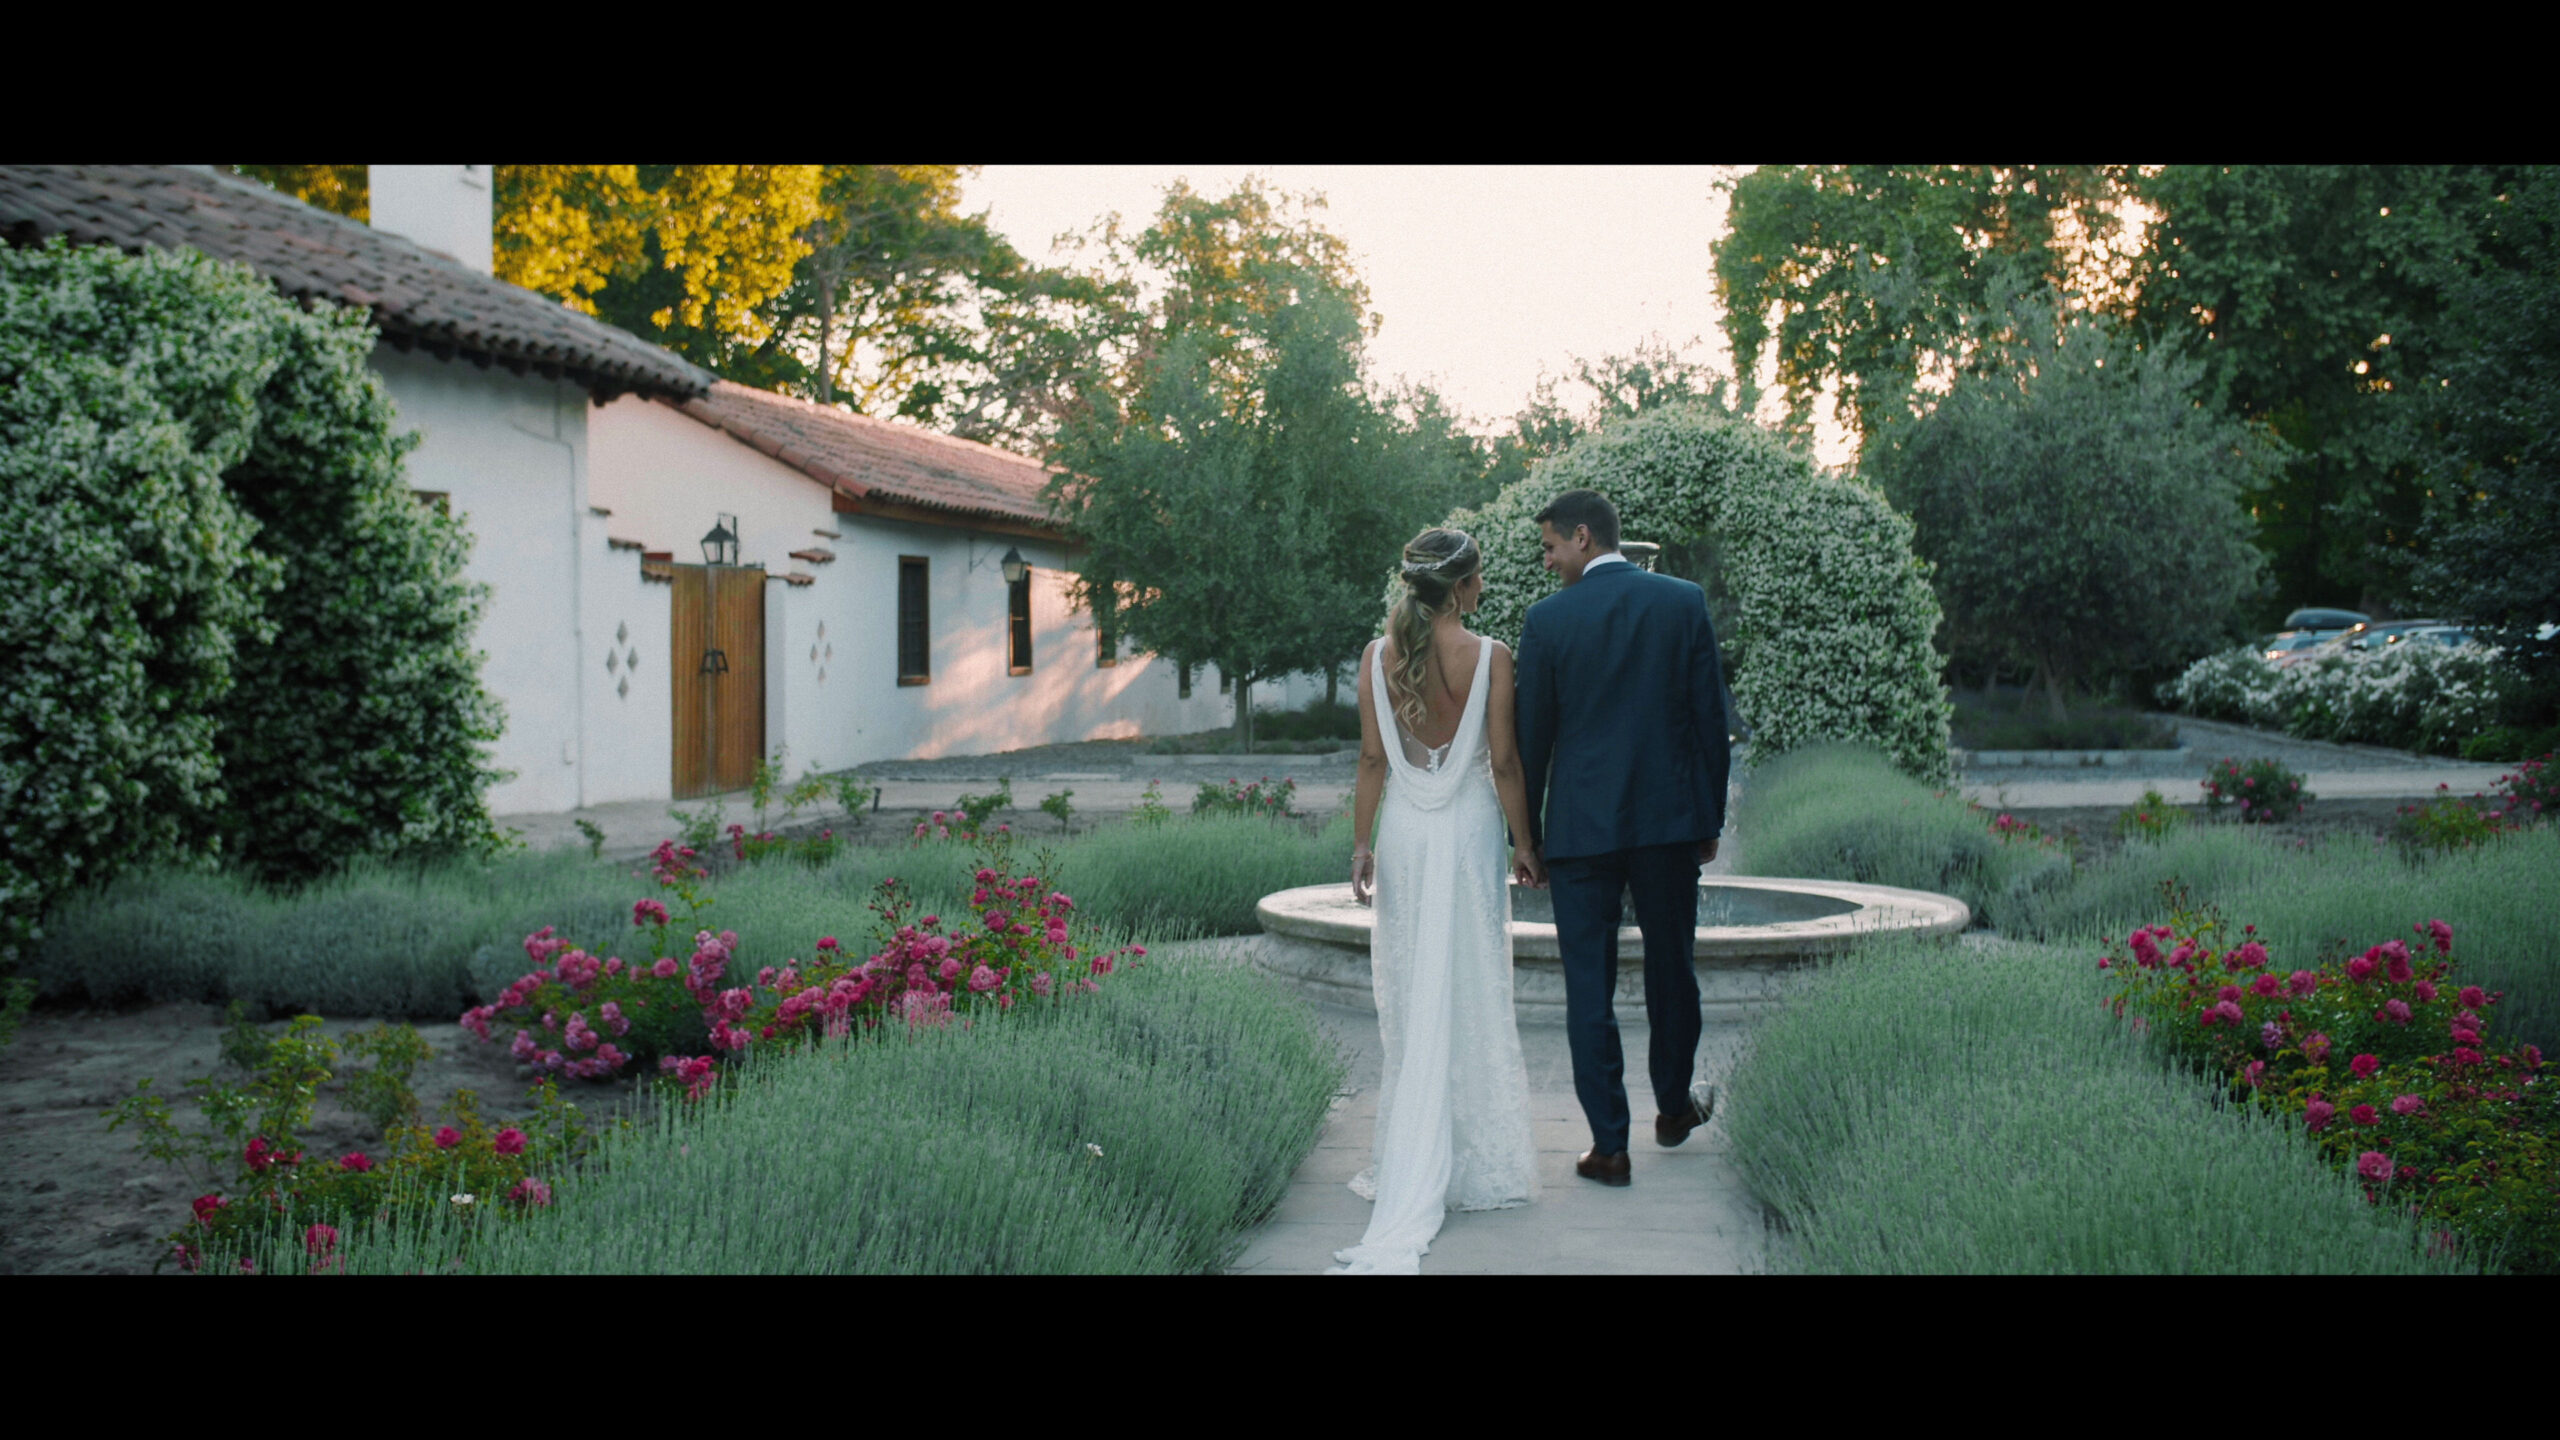 Matrimonio en Casona El Cruceral de Pirque - Video por Ampersand Wedding Films